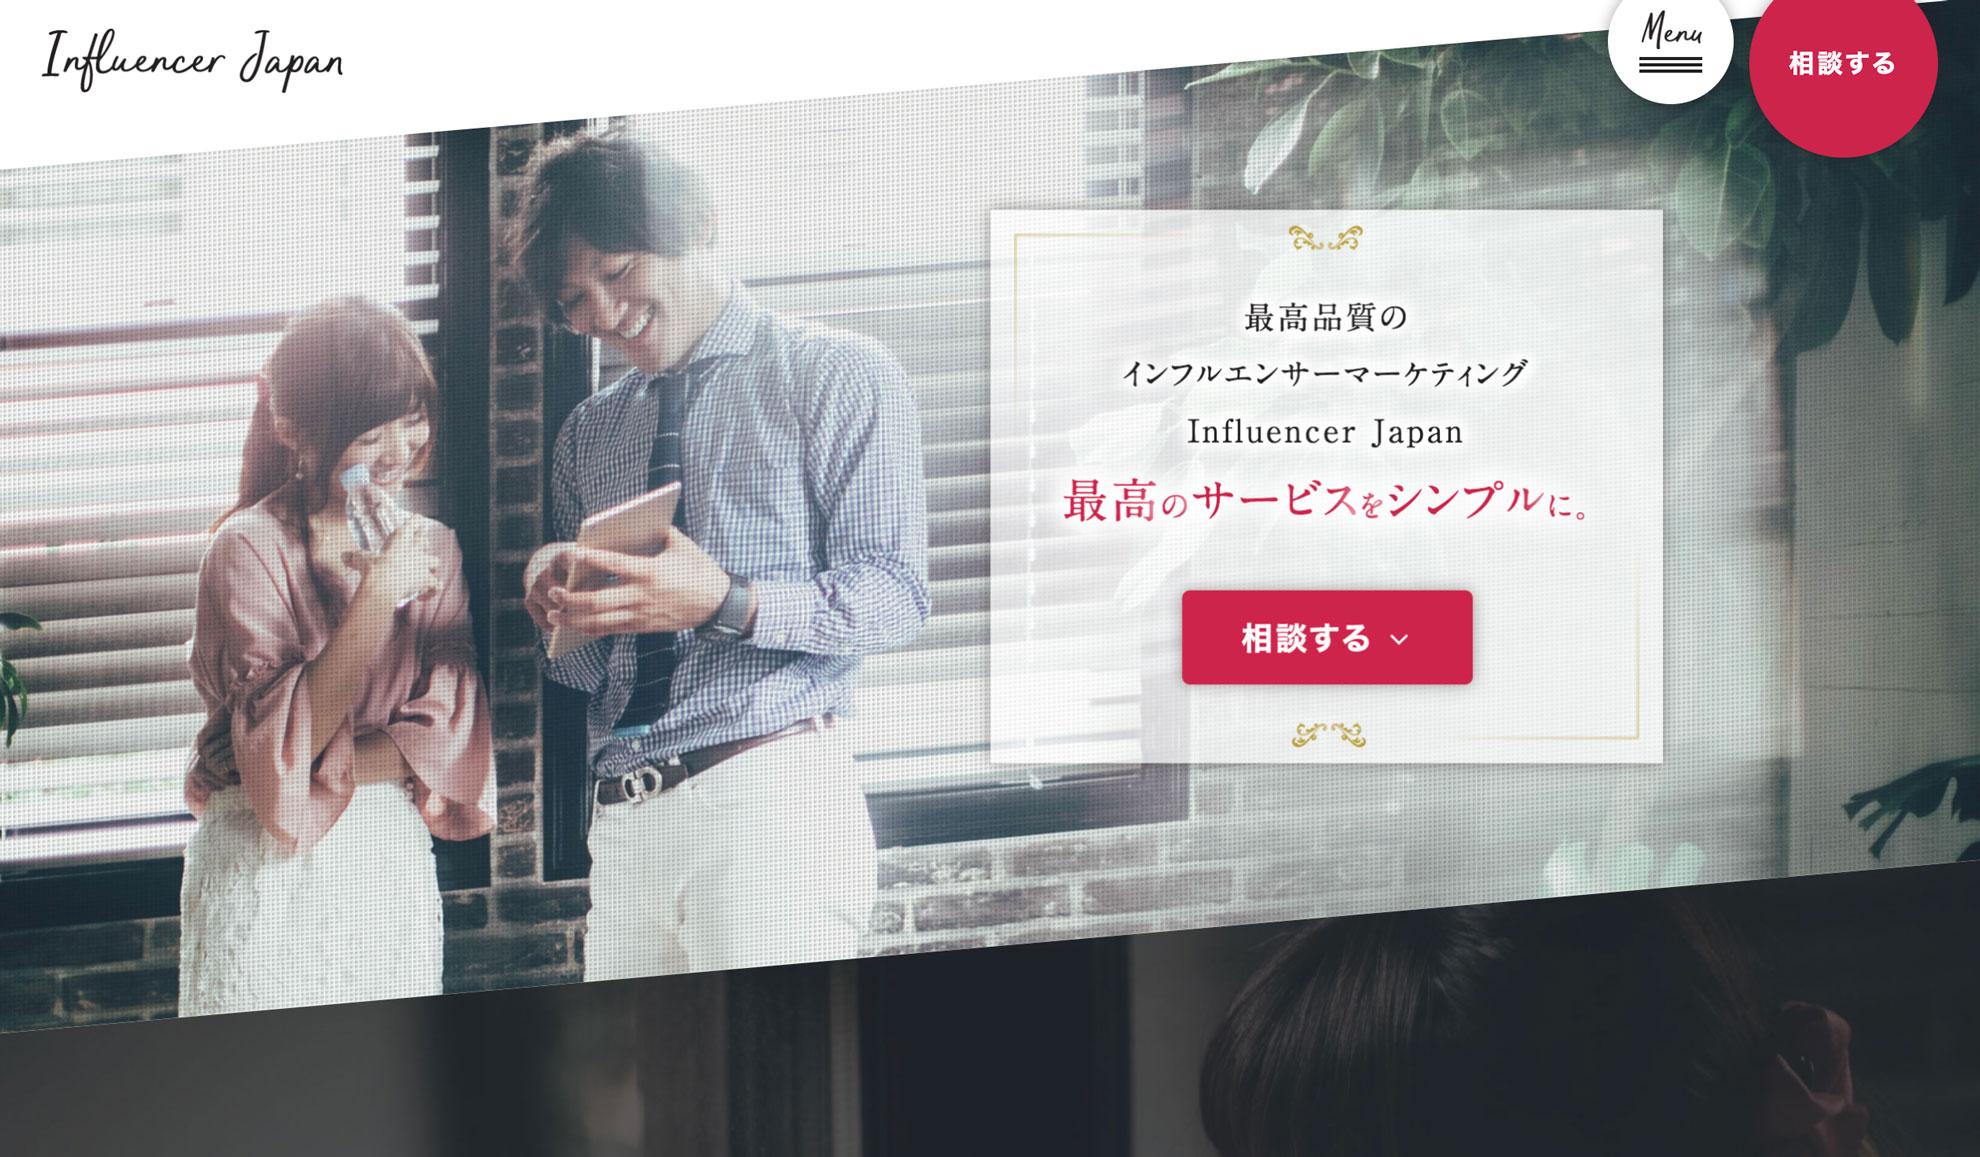 Influencer Japan（インフルエンサージャパン）の売れた実績・バズった実績・CV向上した実績・効果の出た実績のイメージ画像。インスタグラムの集客効果と実績の向上